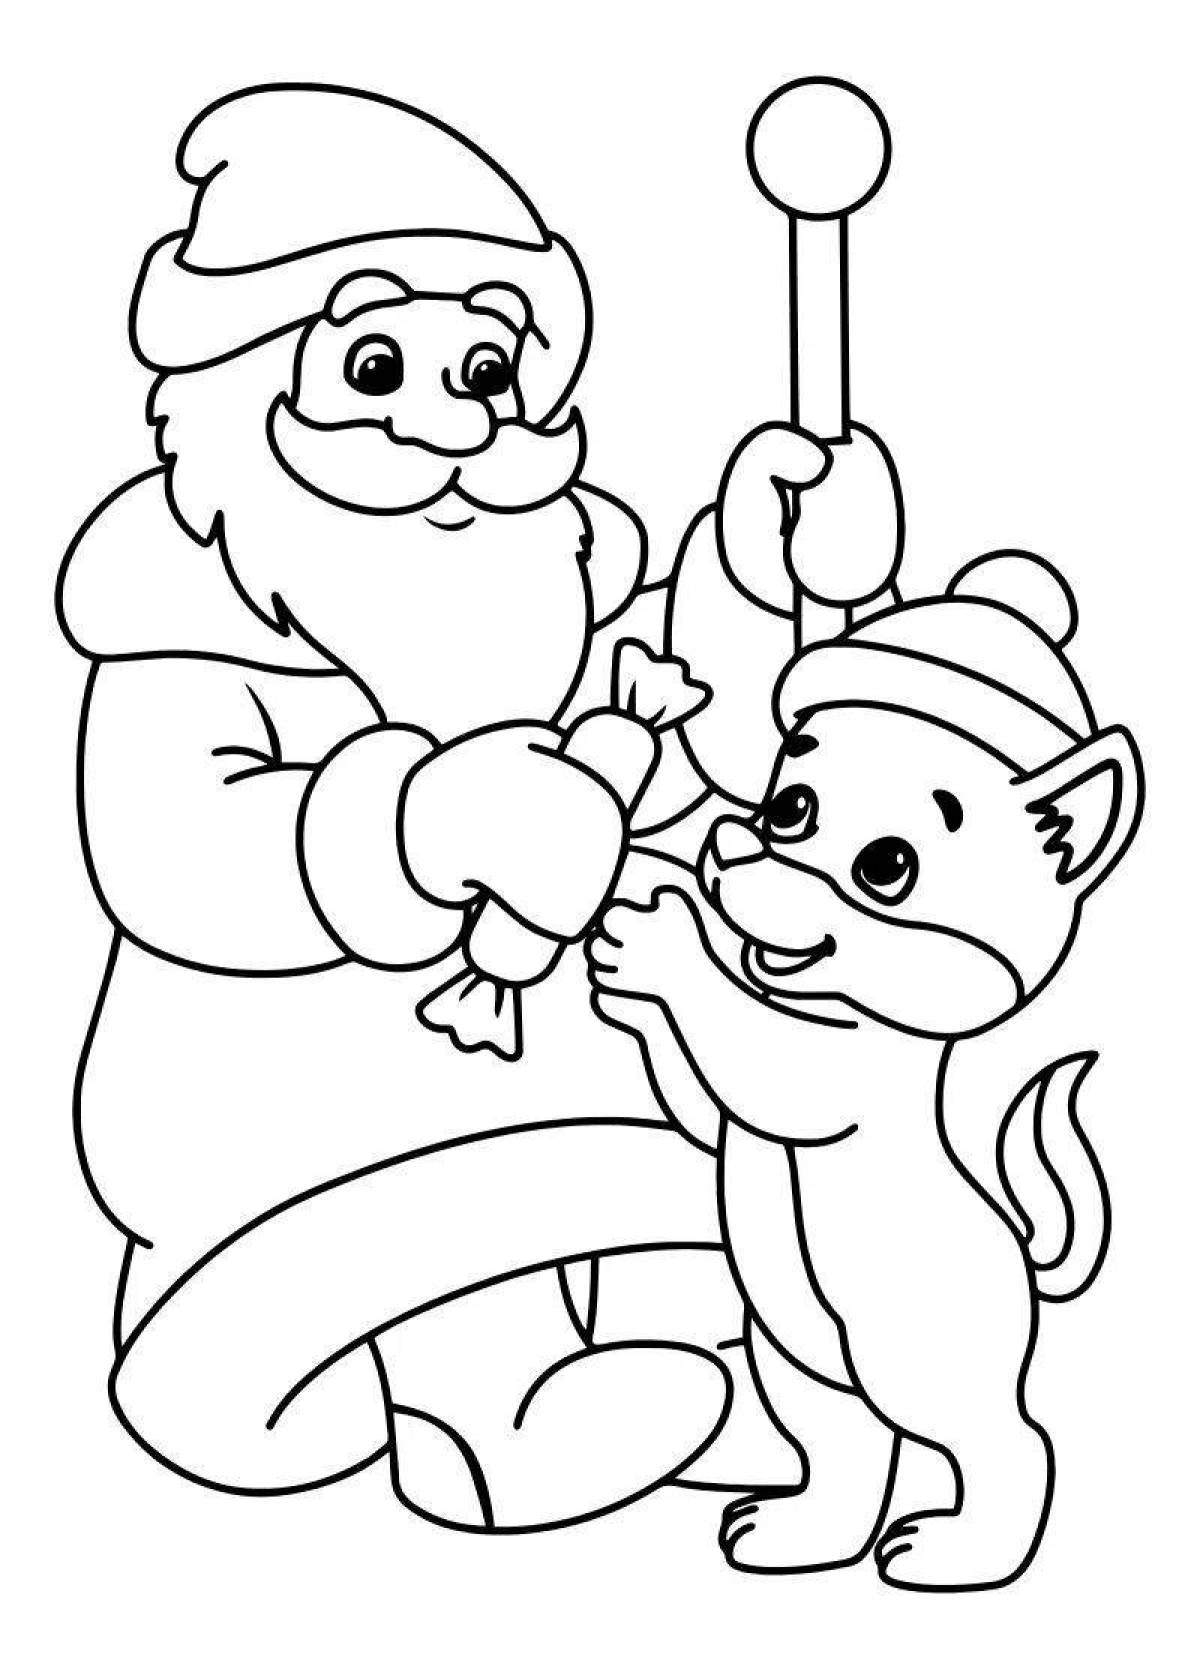 Coloring page adorable santa claus